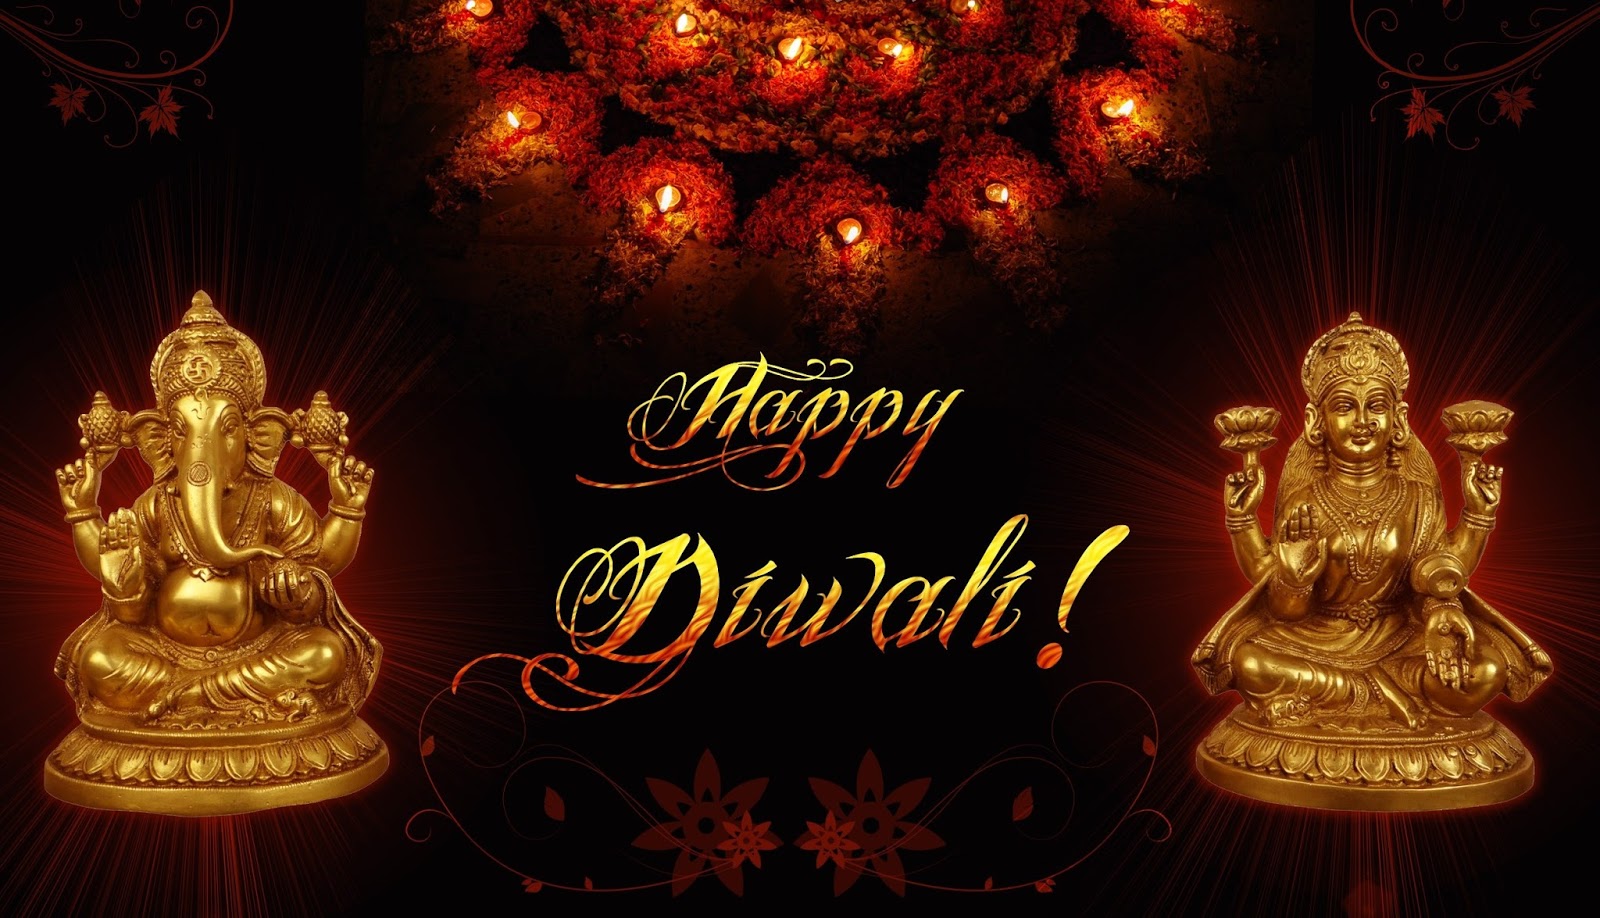 Happy Deepavali 2016 Diwali Lakshmi Puja Shubh Muhurat and Timings